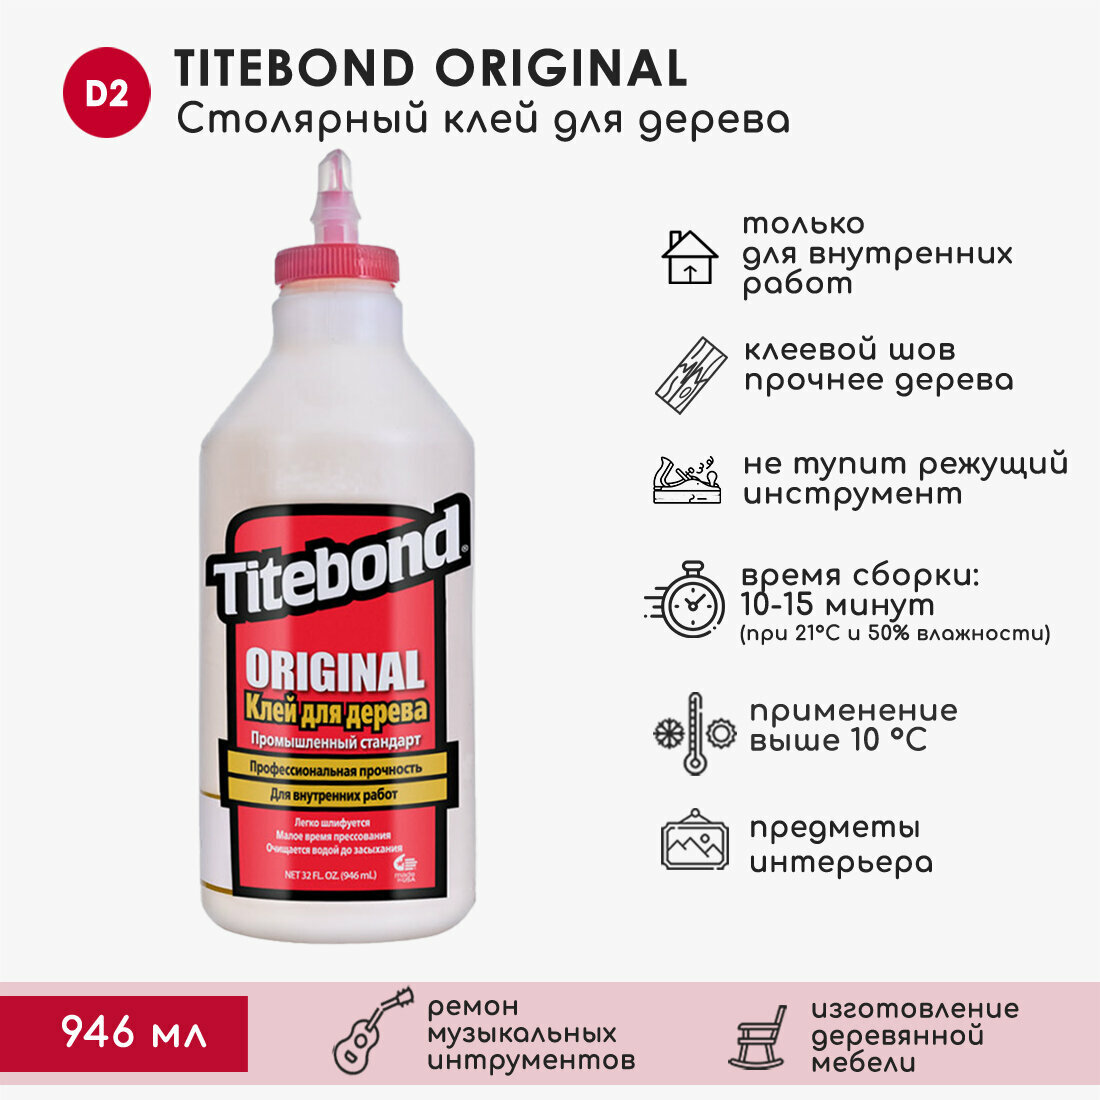    Titebond Original D2 1,08 